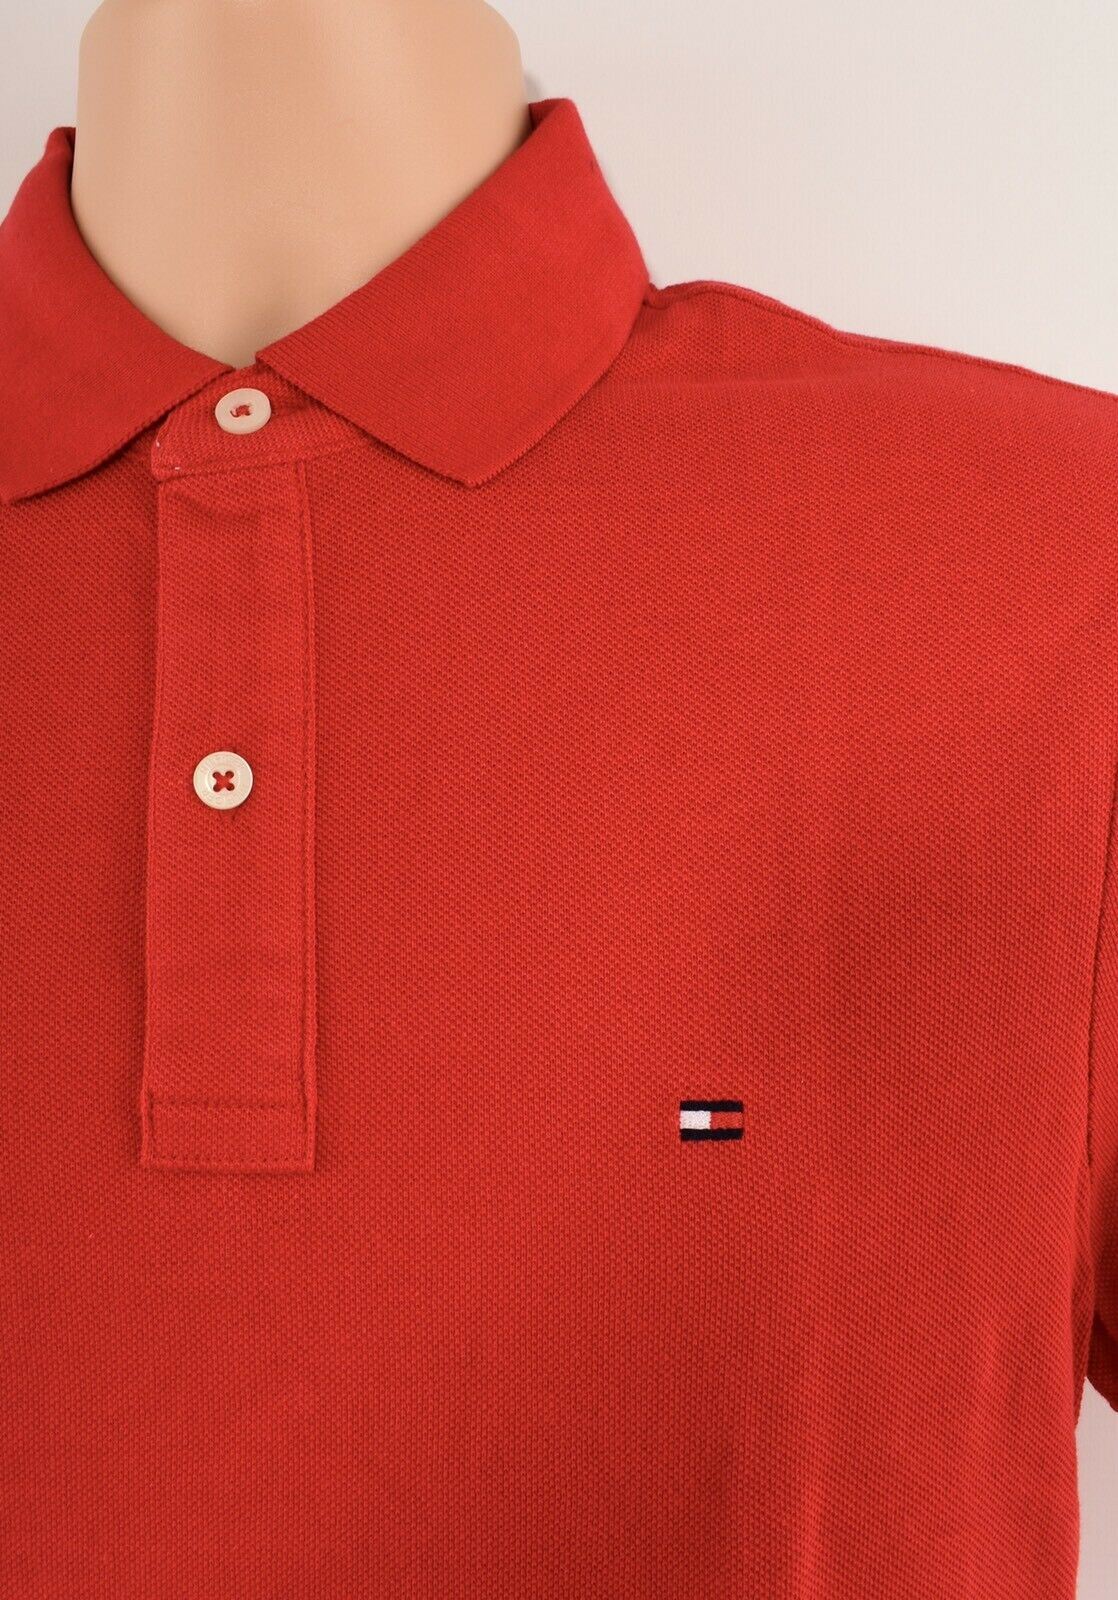 TOMMY HILFIGER Men's Cotton Pique Polo Shirt, Red, size S /size M /size L